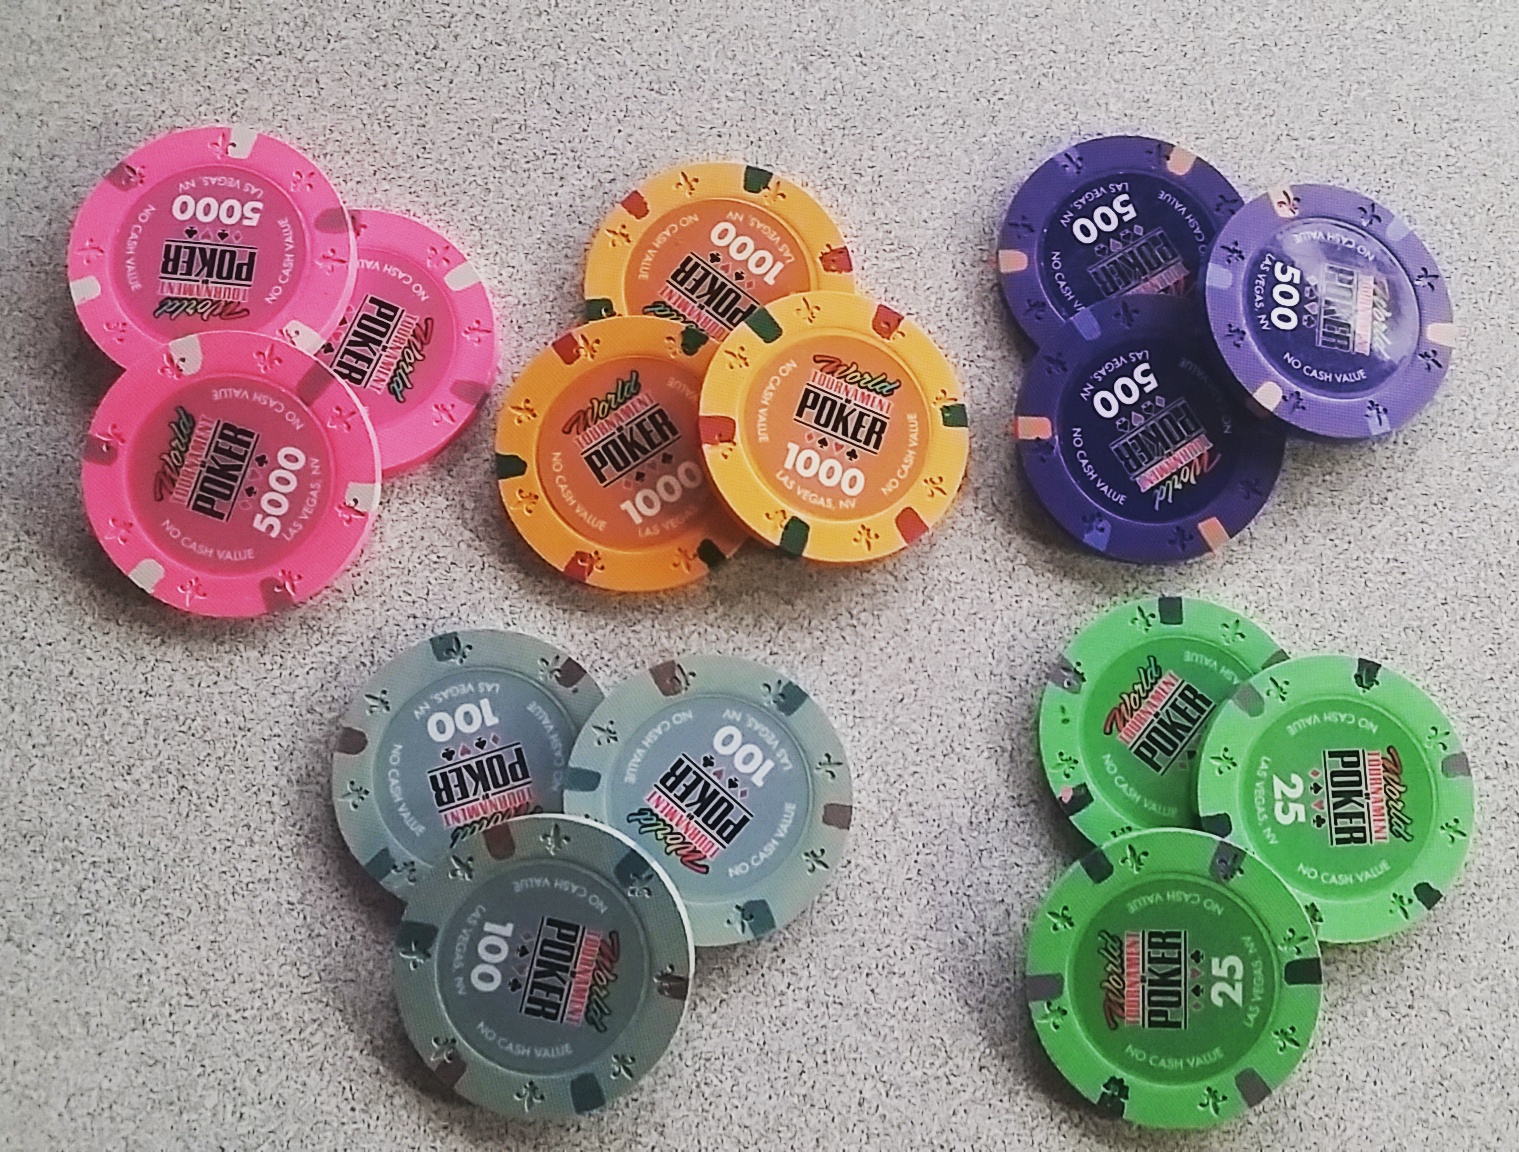 WSOP Tribute Poker Chips - WTOP chips